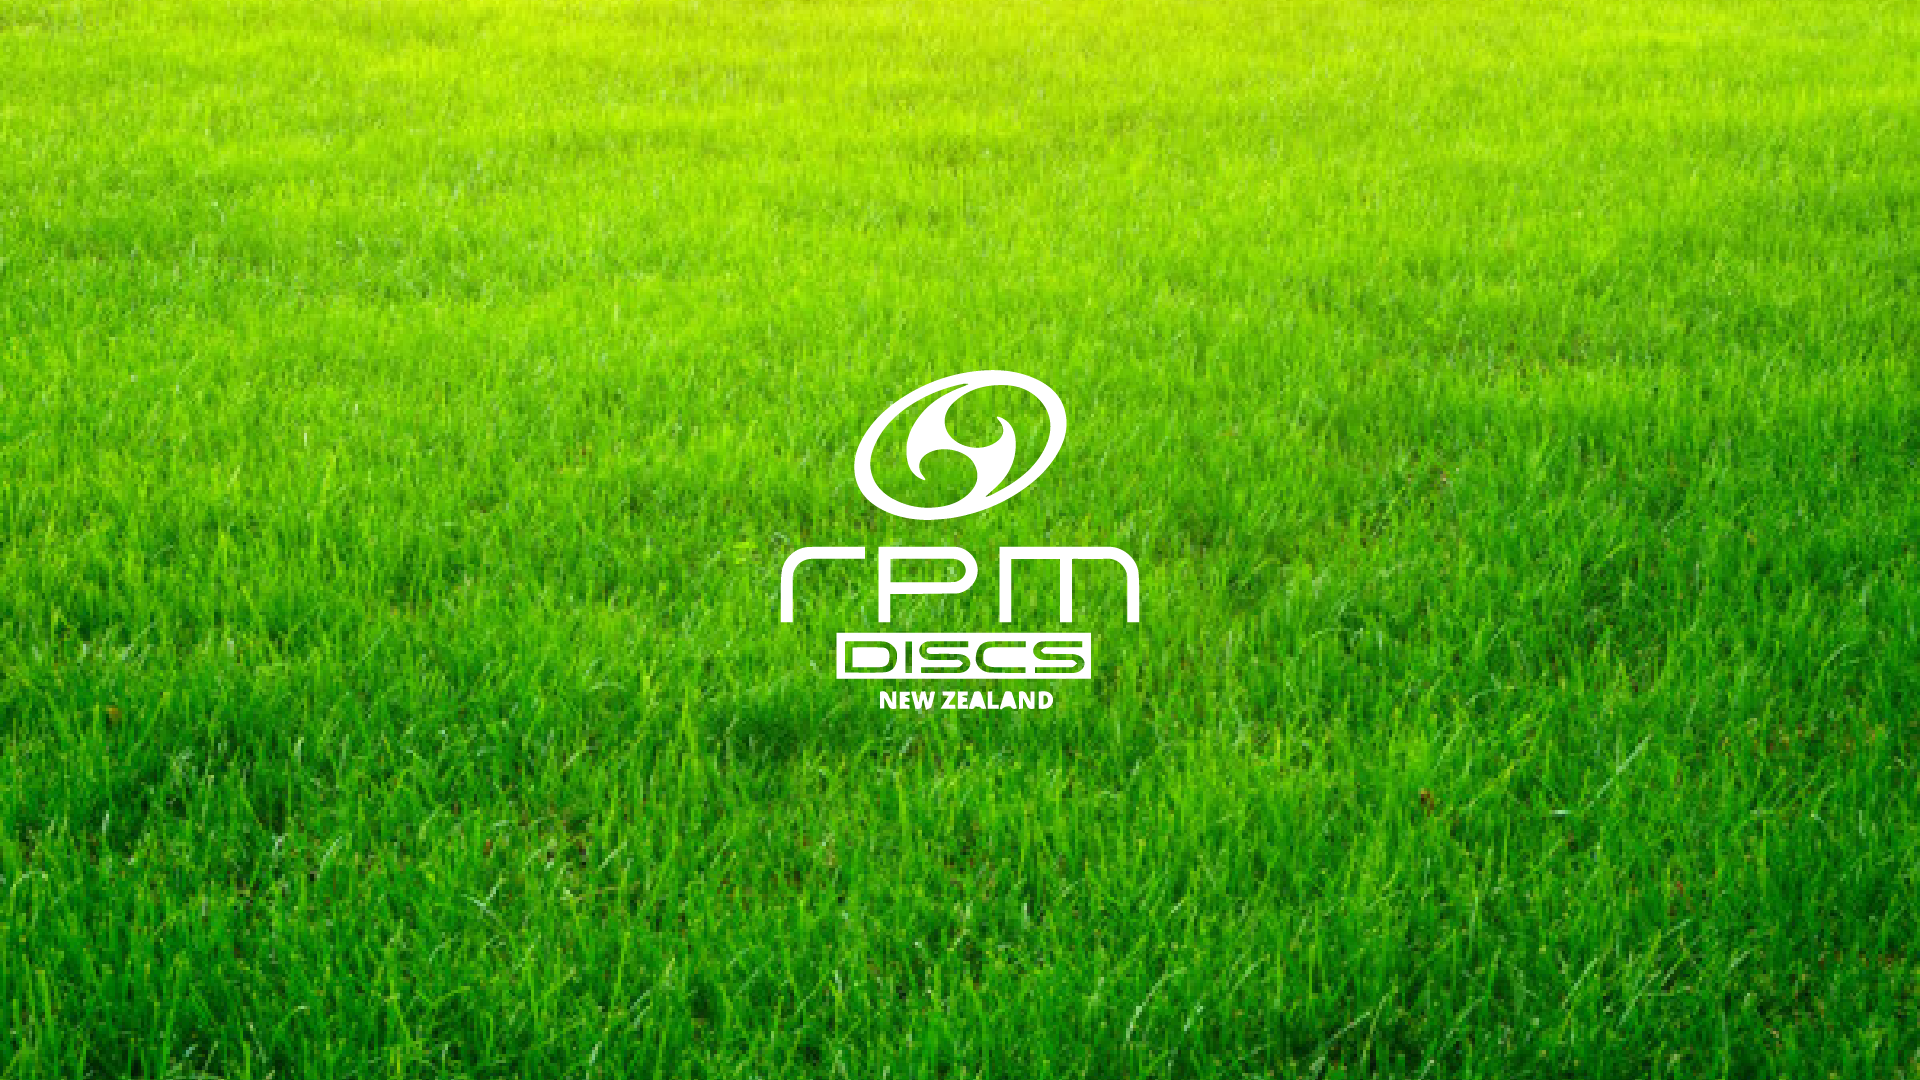 RPM Discs logo on green grass